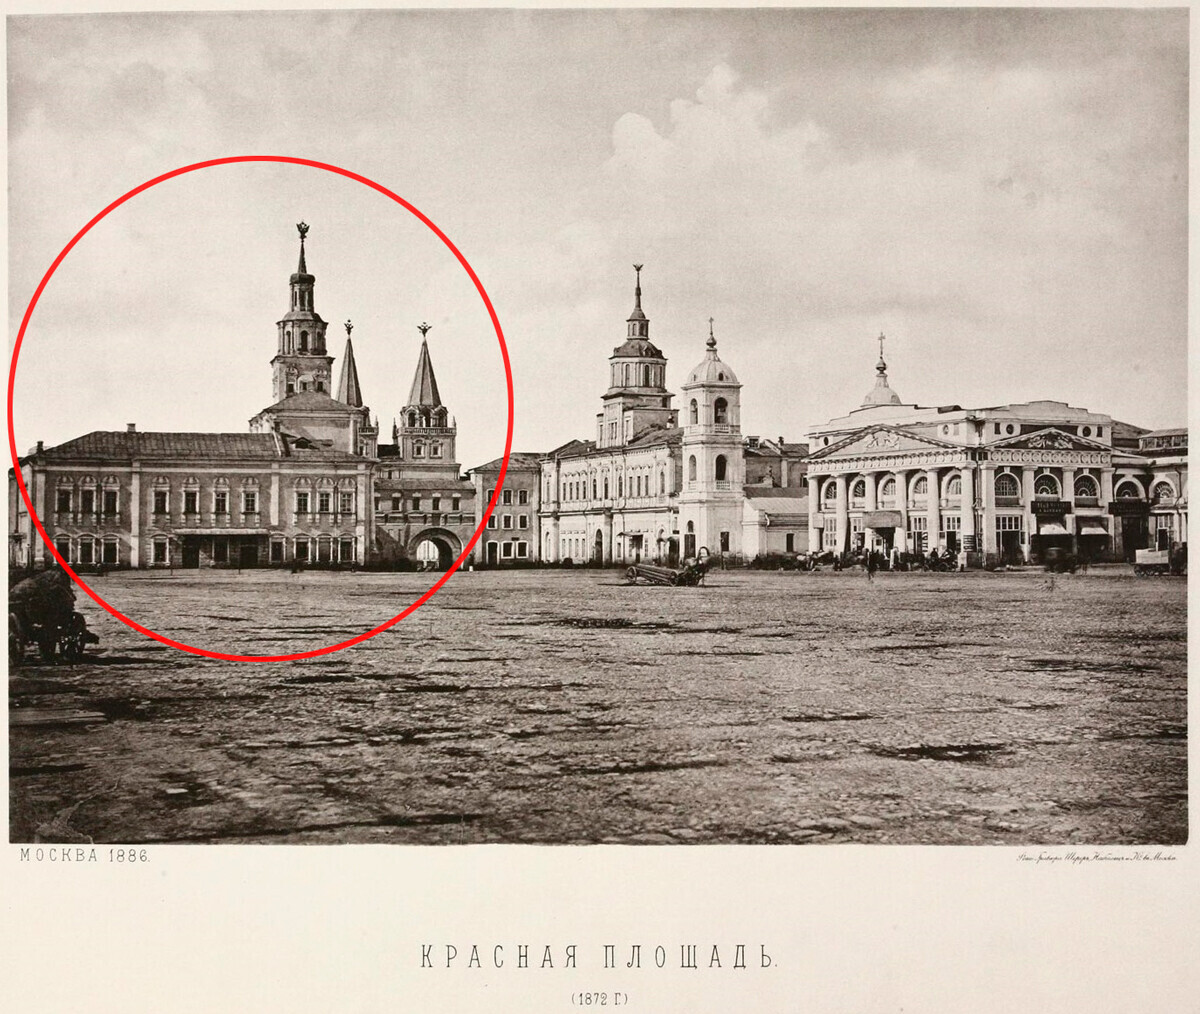 Edifício do Zemski prikaz na Praça Vermelha, 1872

